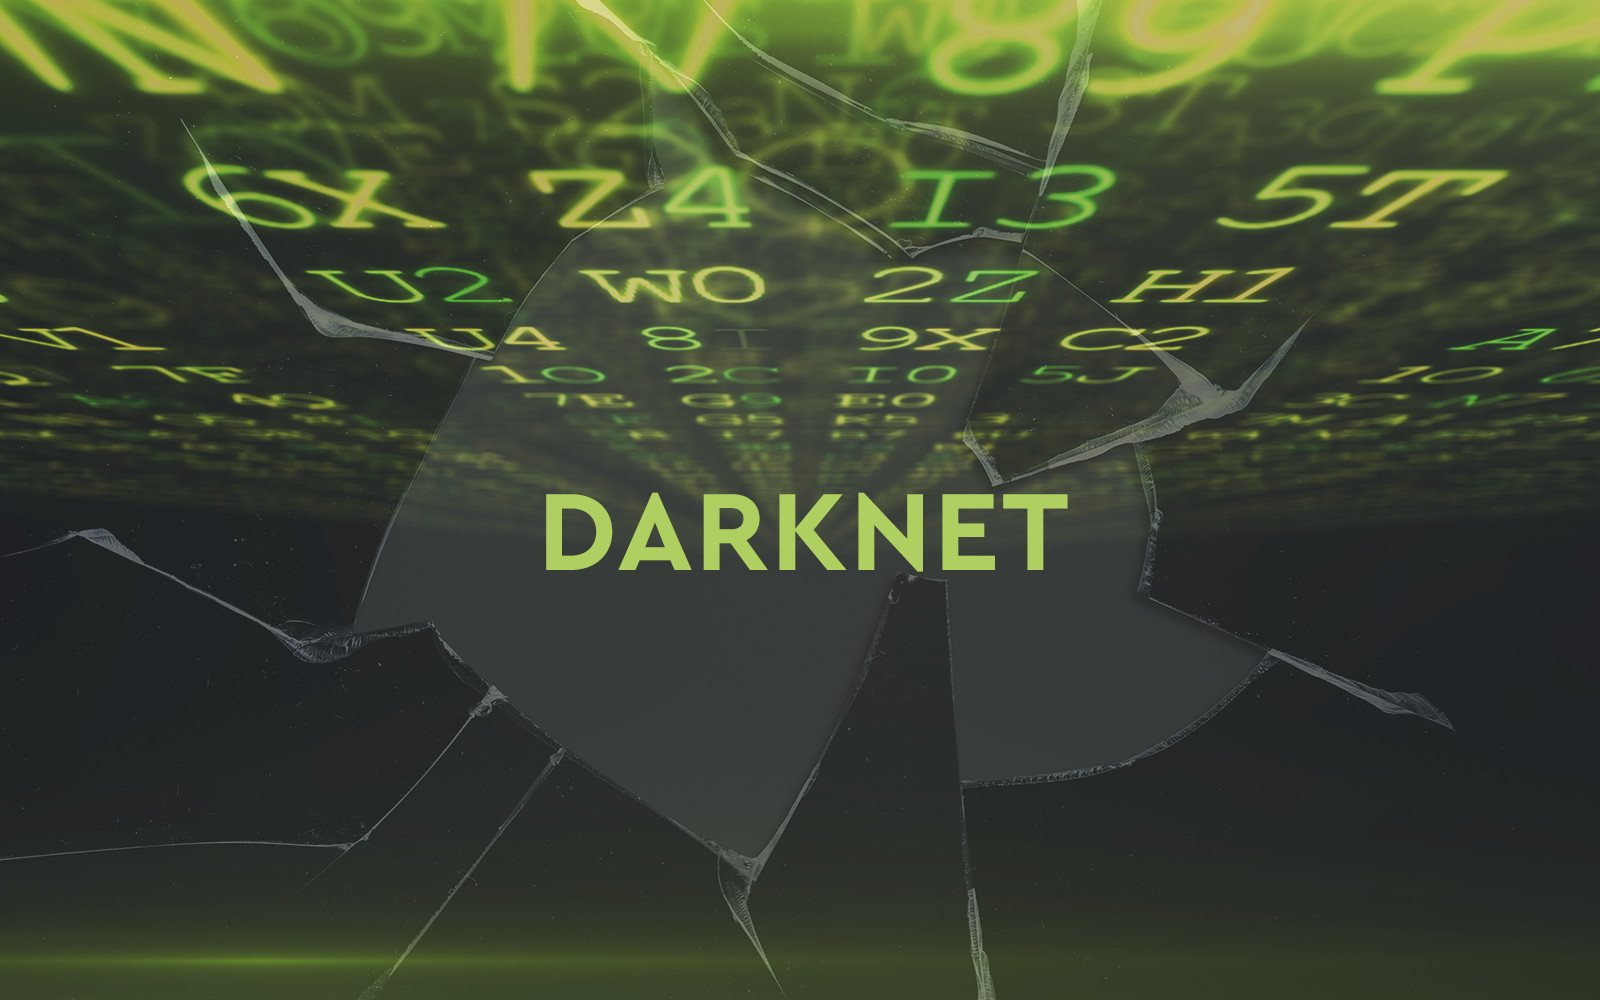 Dark Web Market List